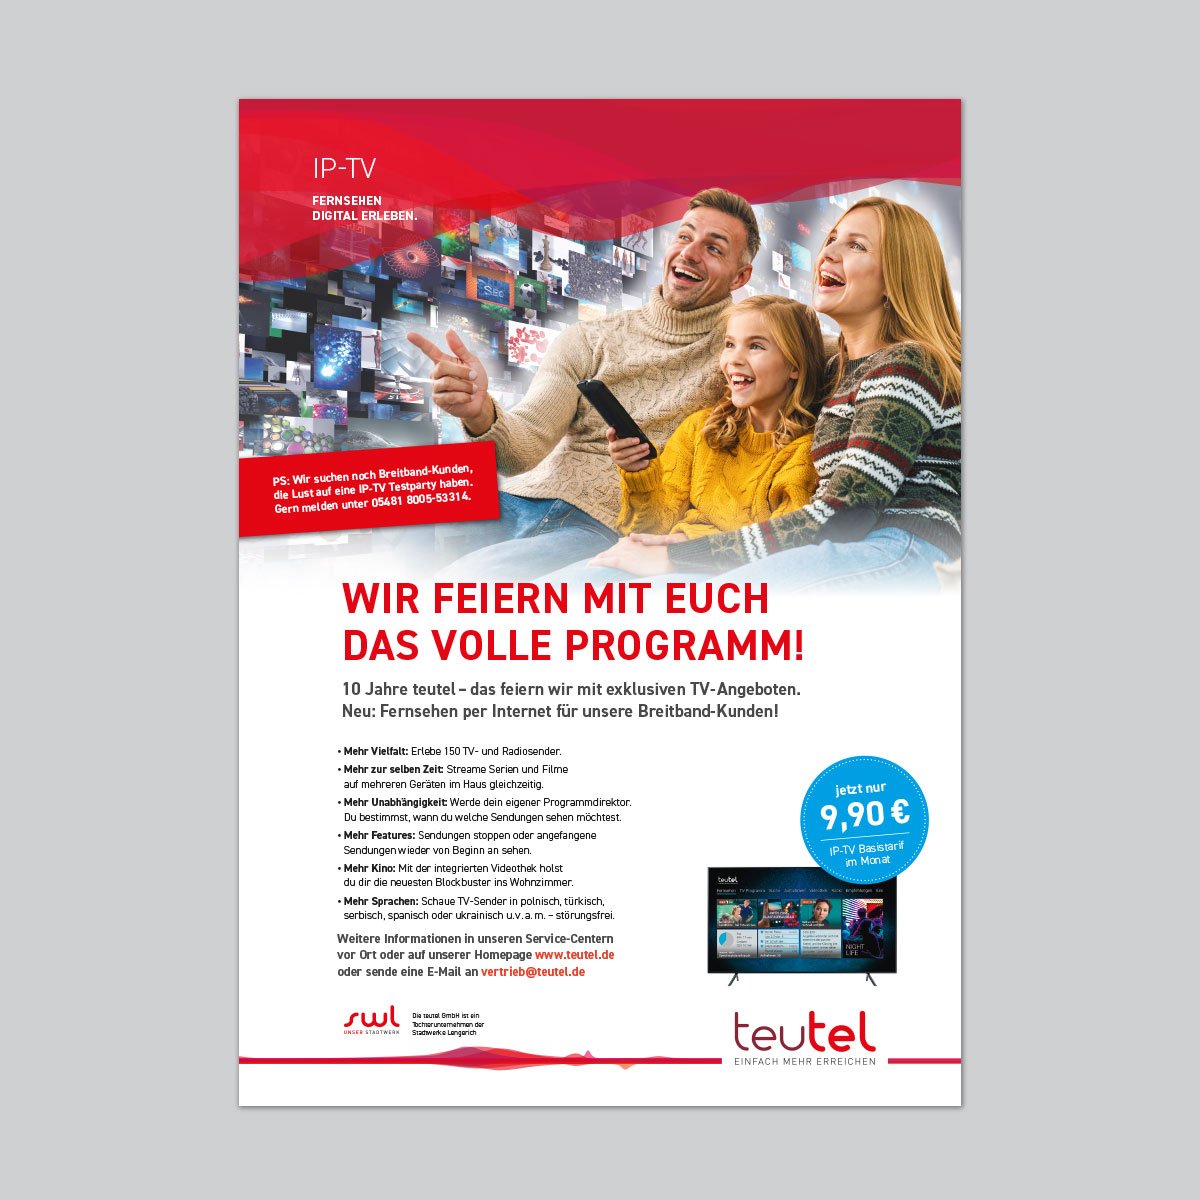 teutel IP-TV Anzeige by Berger, perk und Partner